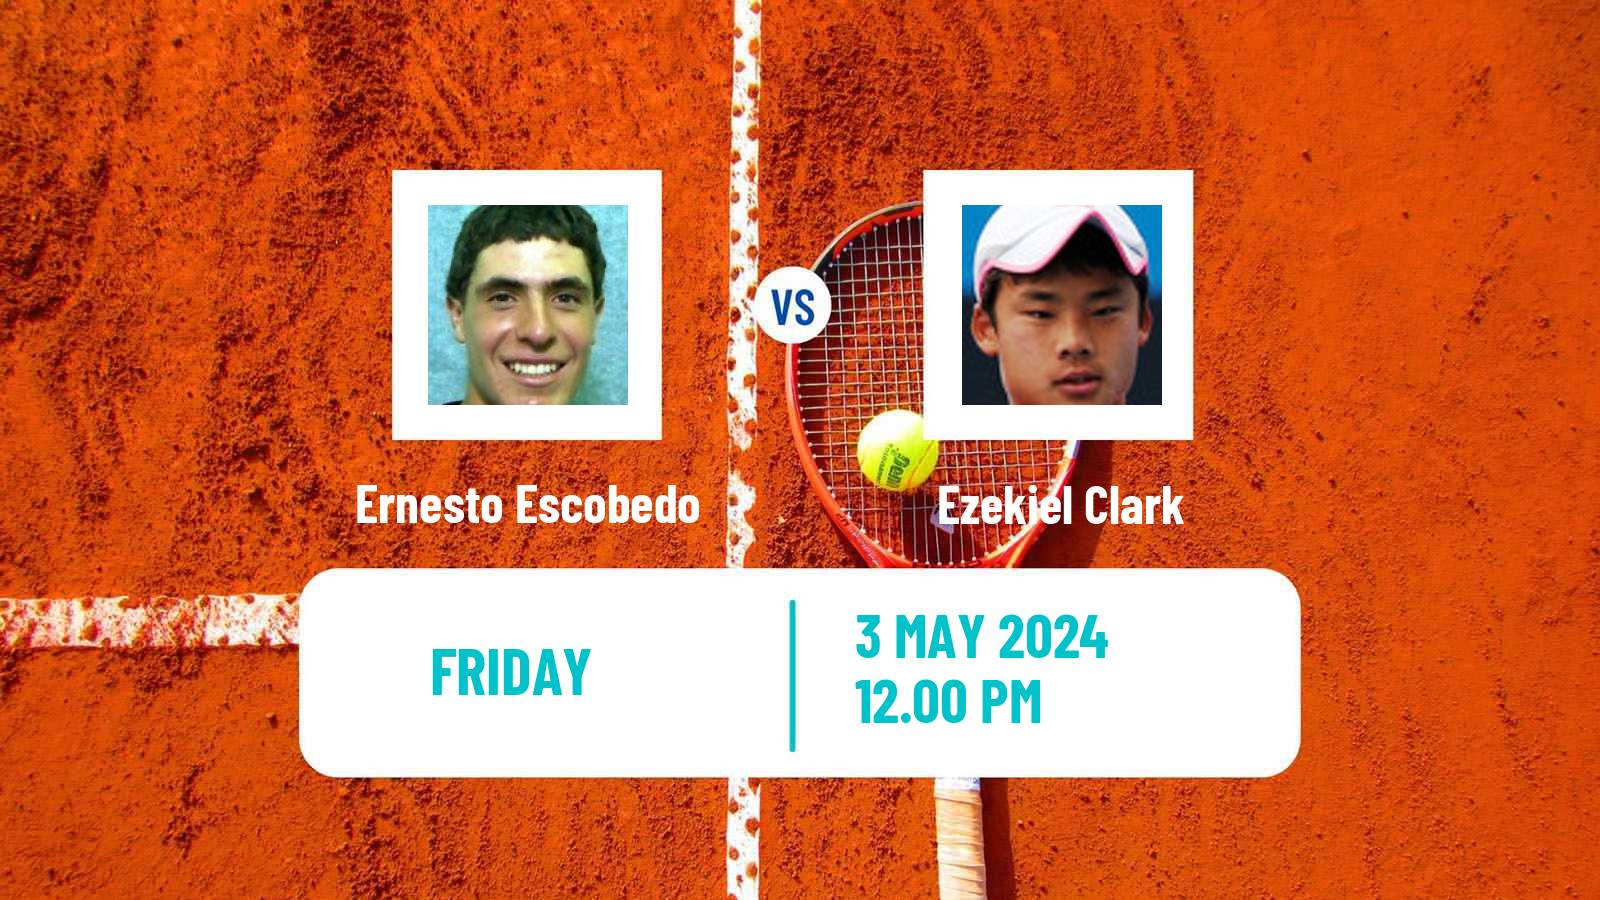 Tennis ITF M25 Xalapa Men Ernesto Escobedo - Ezekiel Clark